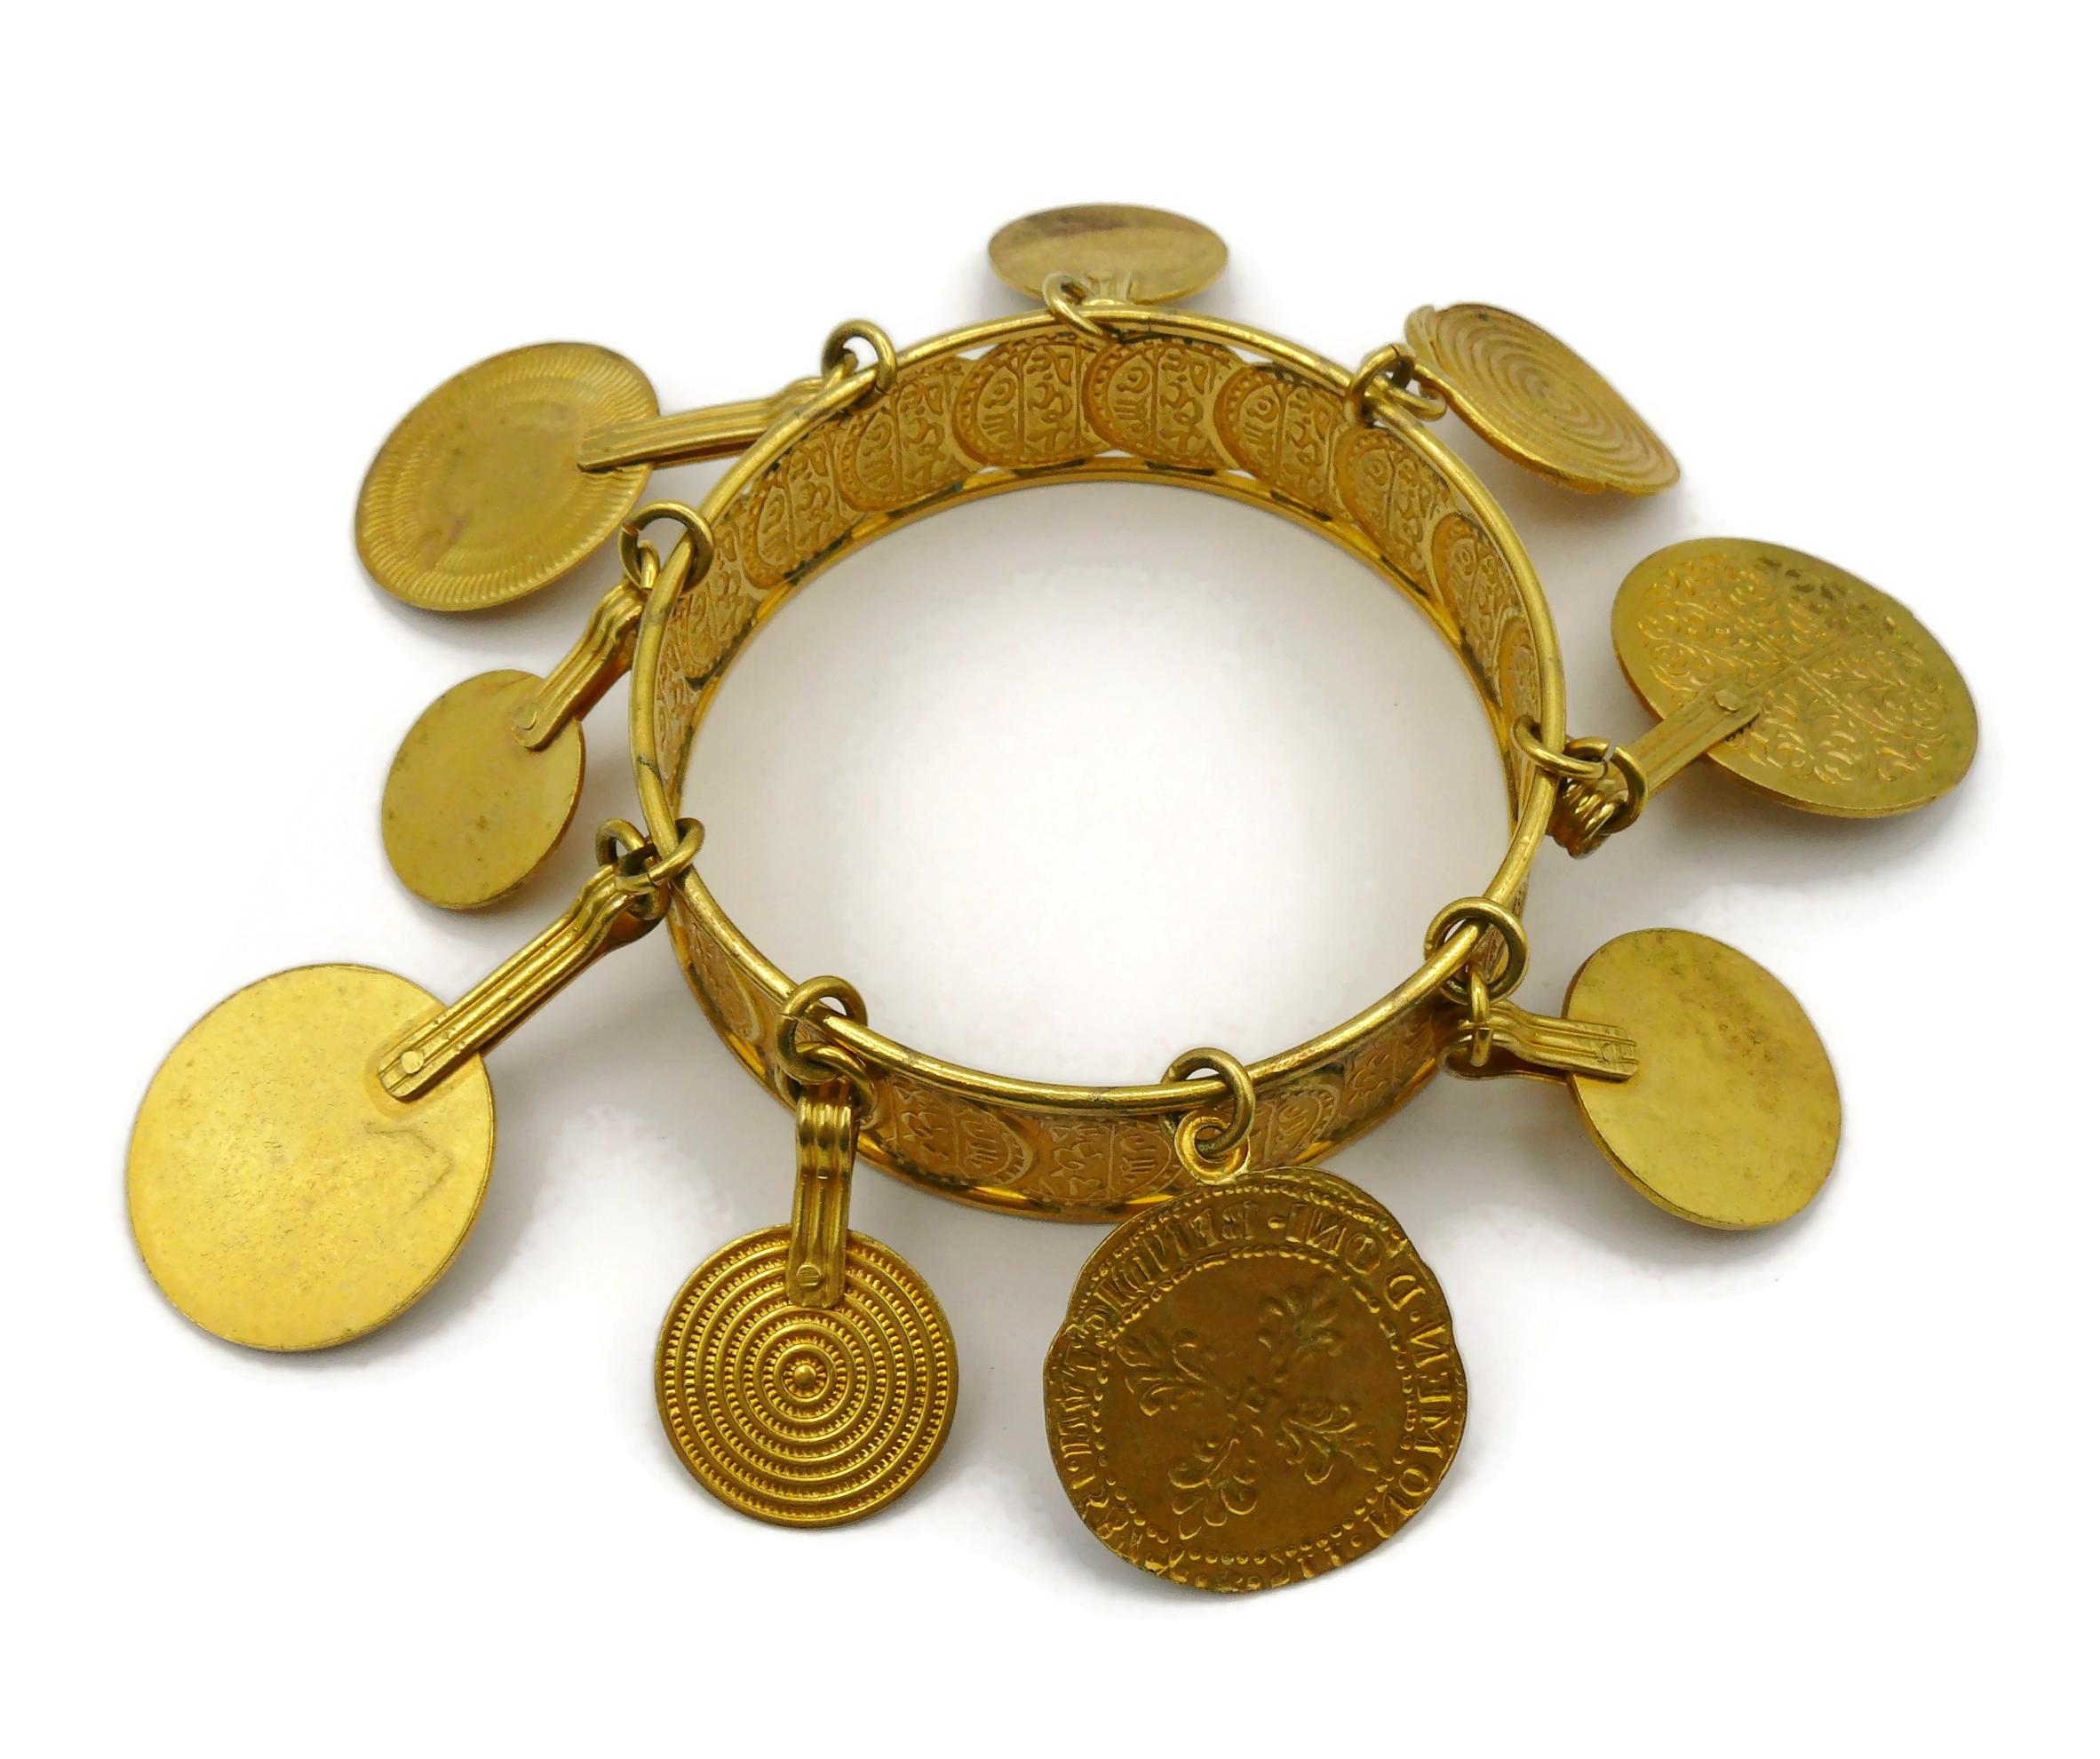 YVES SAINT LAURENT YSL Vintage Medal Charm Bangle Bracelet For Sale 5